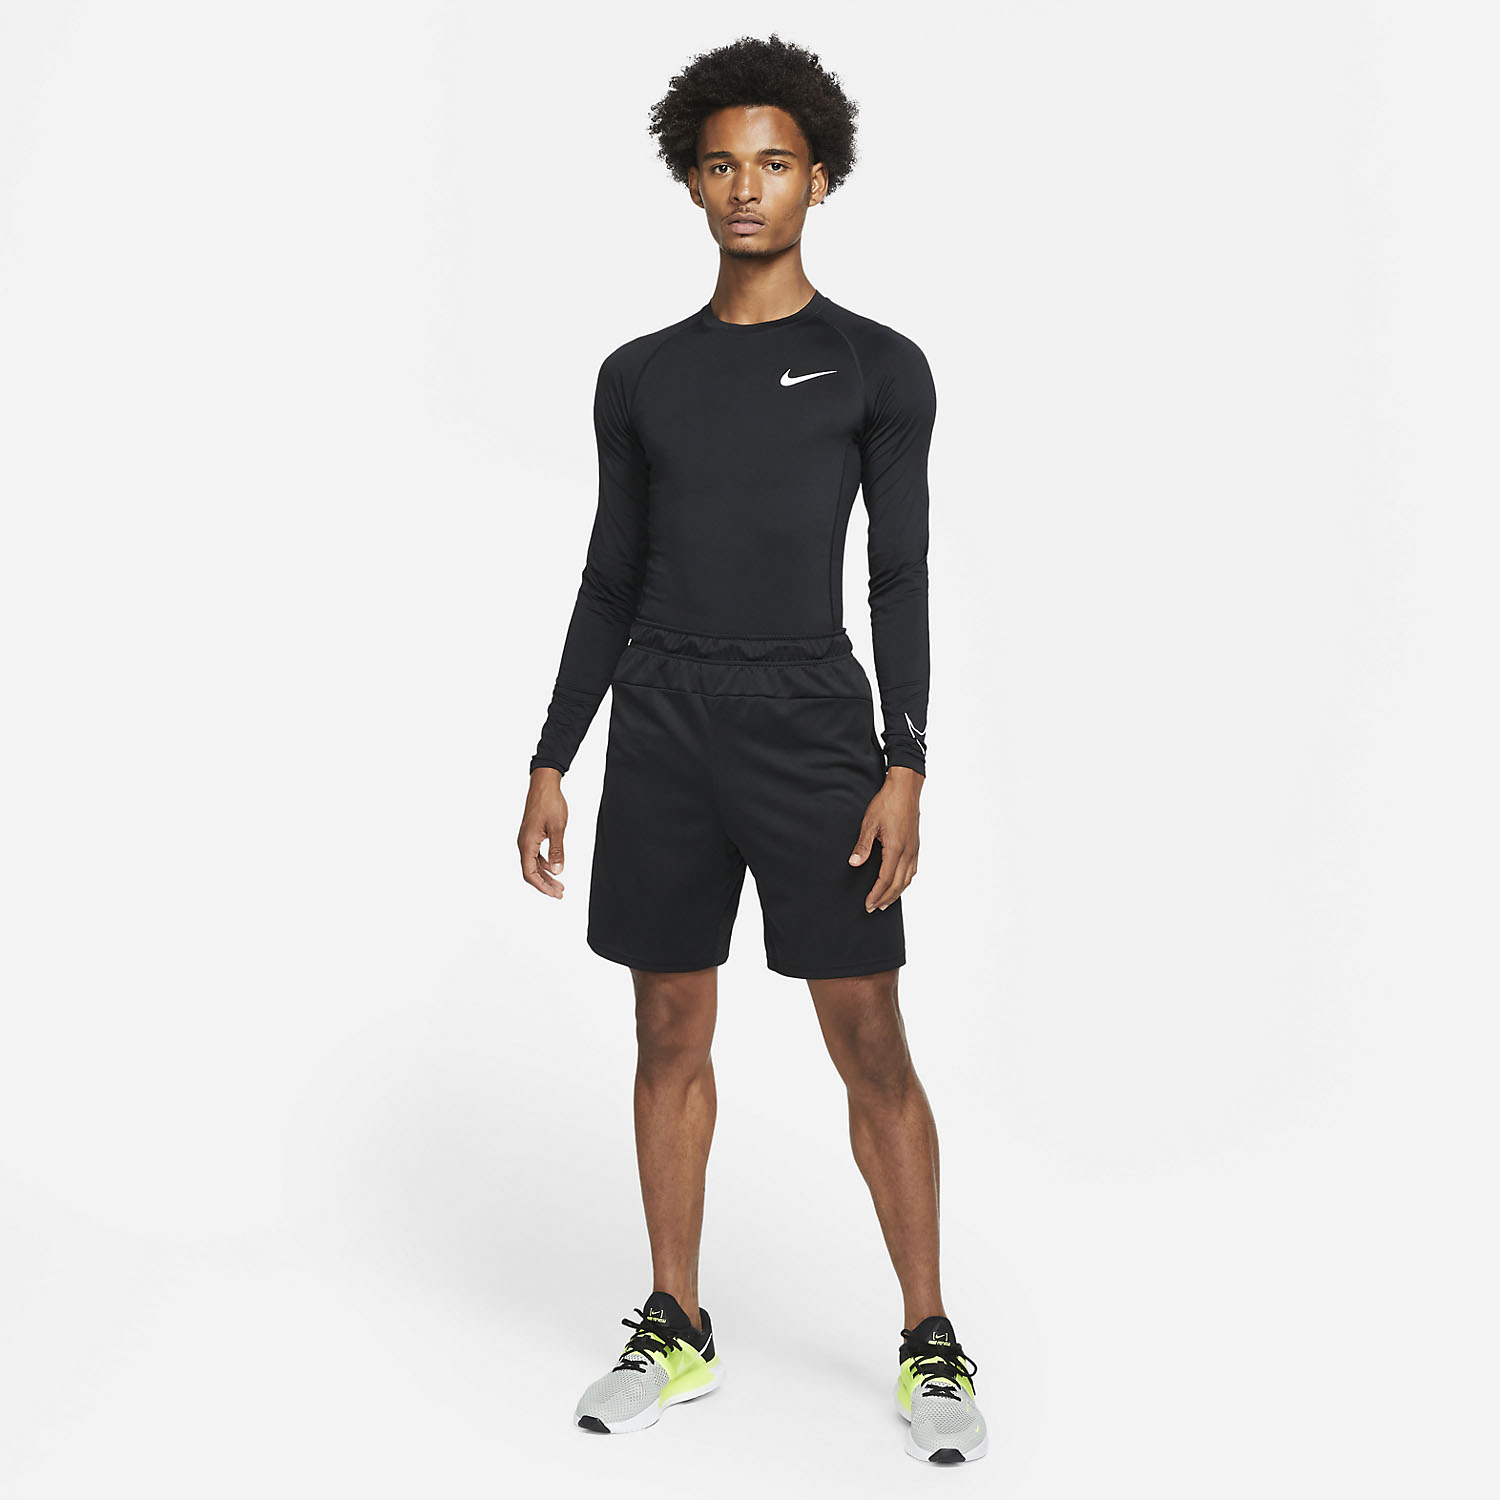 Nike Pro Dri-FIT Swoosh Men's Tennis Shirt - Black/White